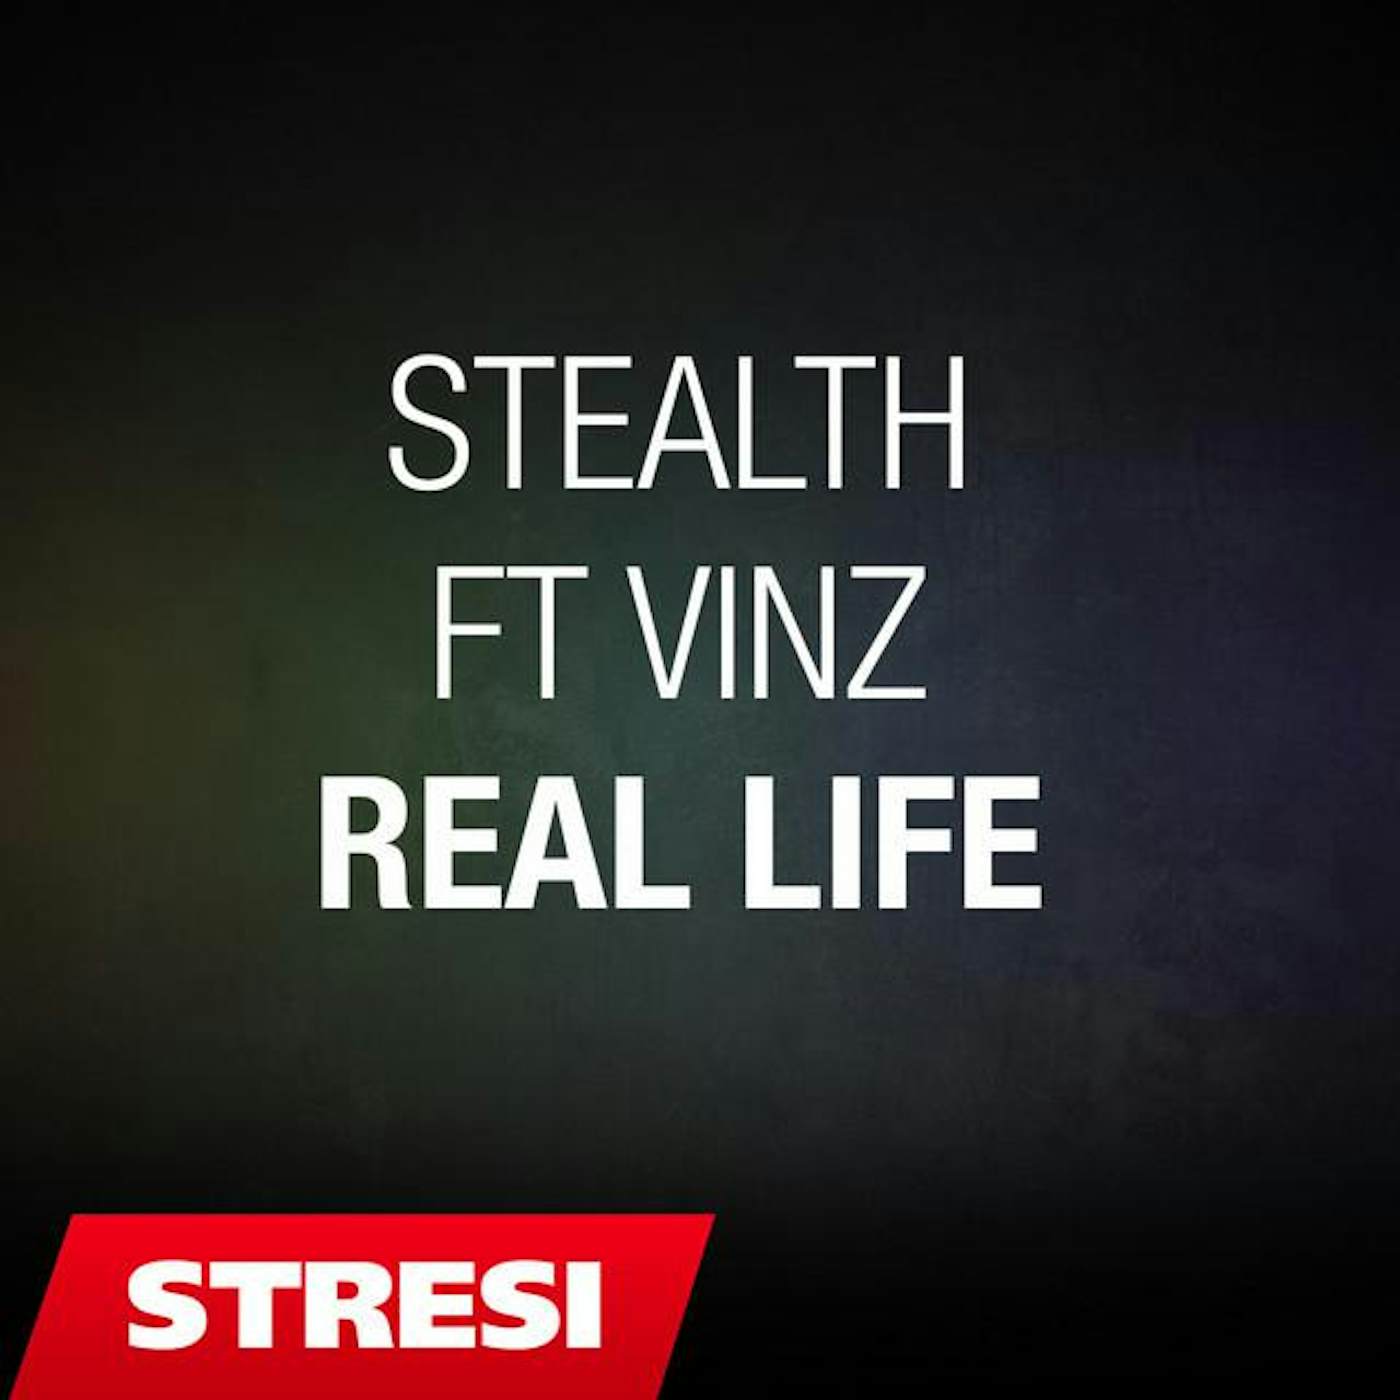 STEALTH ft VINZ